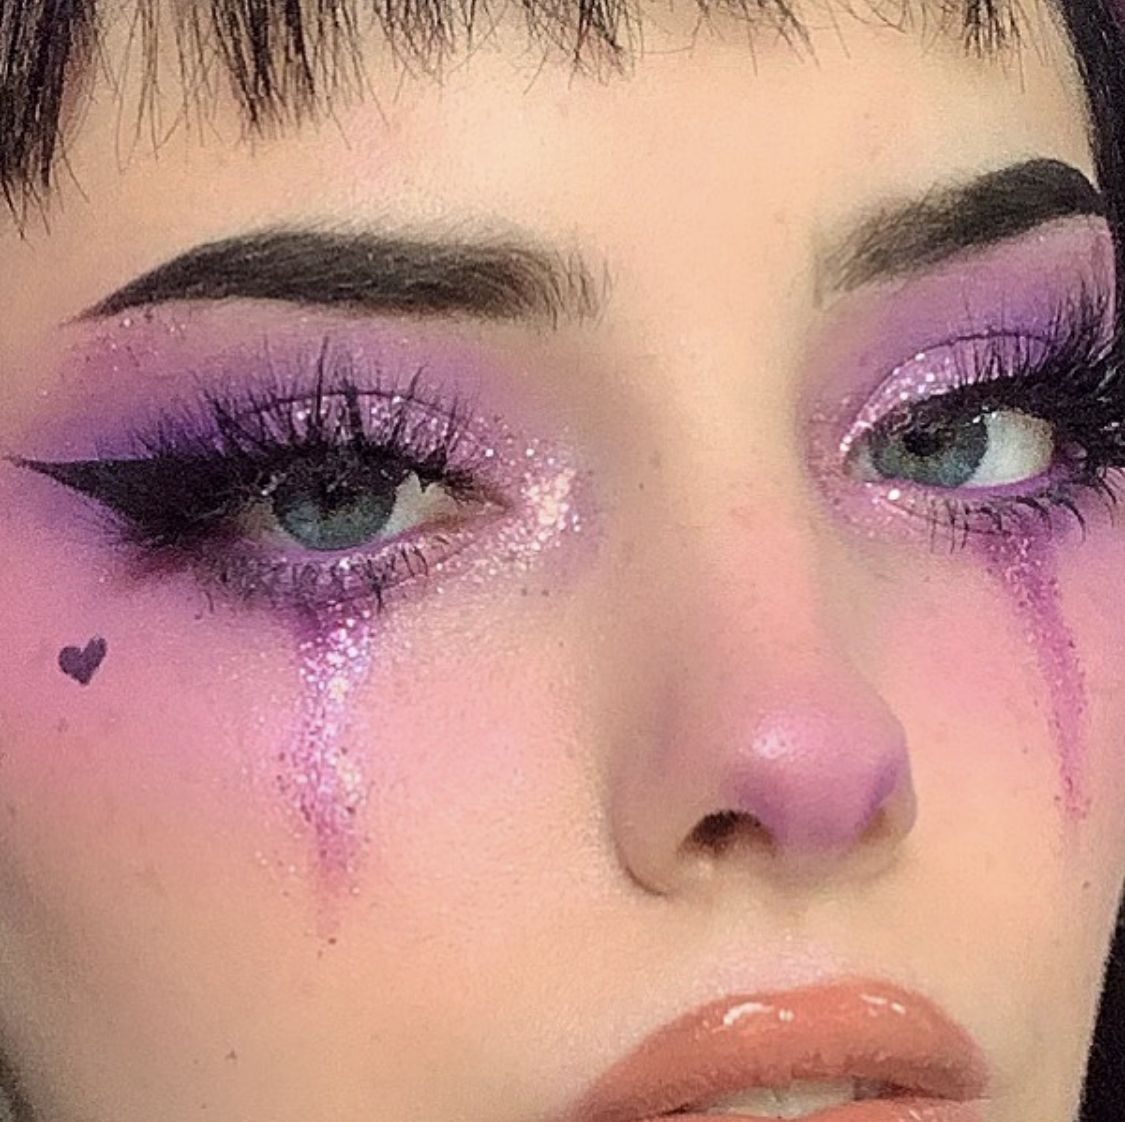 Purple glitter eye makeup with winged liner, euphoria makeup inspo | Edgy makeup, Artistry makeup, Creative makeup looks -   16 euphoria makeup ideas